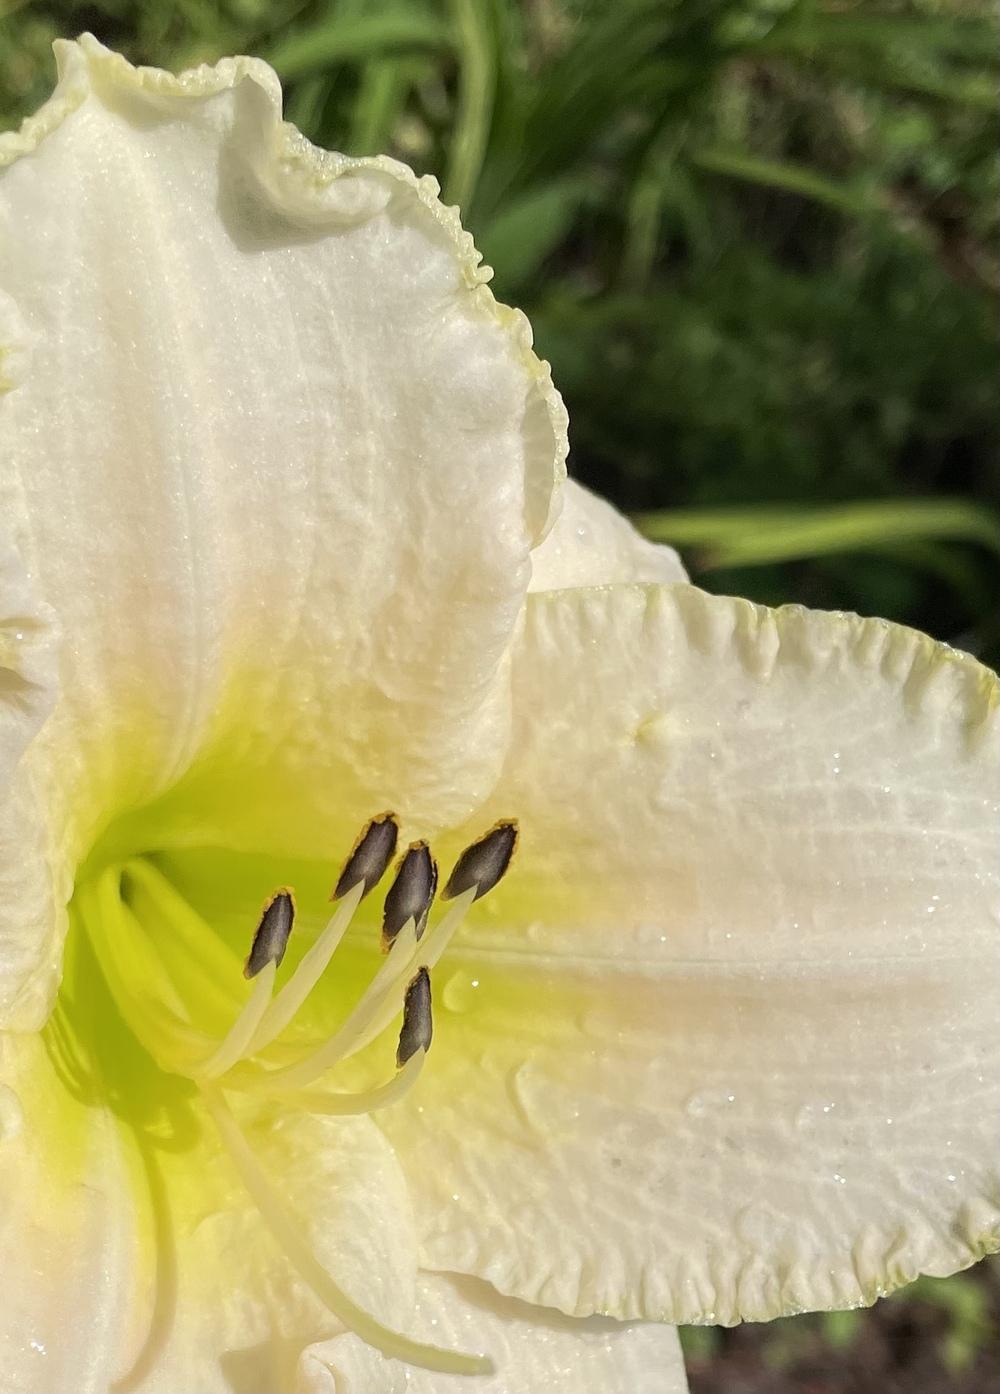 Photo of Daylily (Hemerocallis 'White Perfection') uploaded by Kayakcowgirl